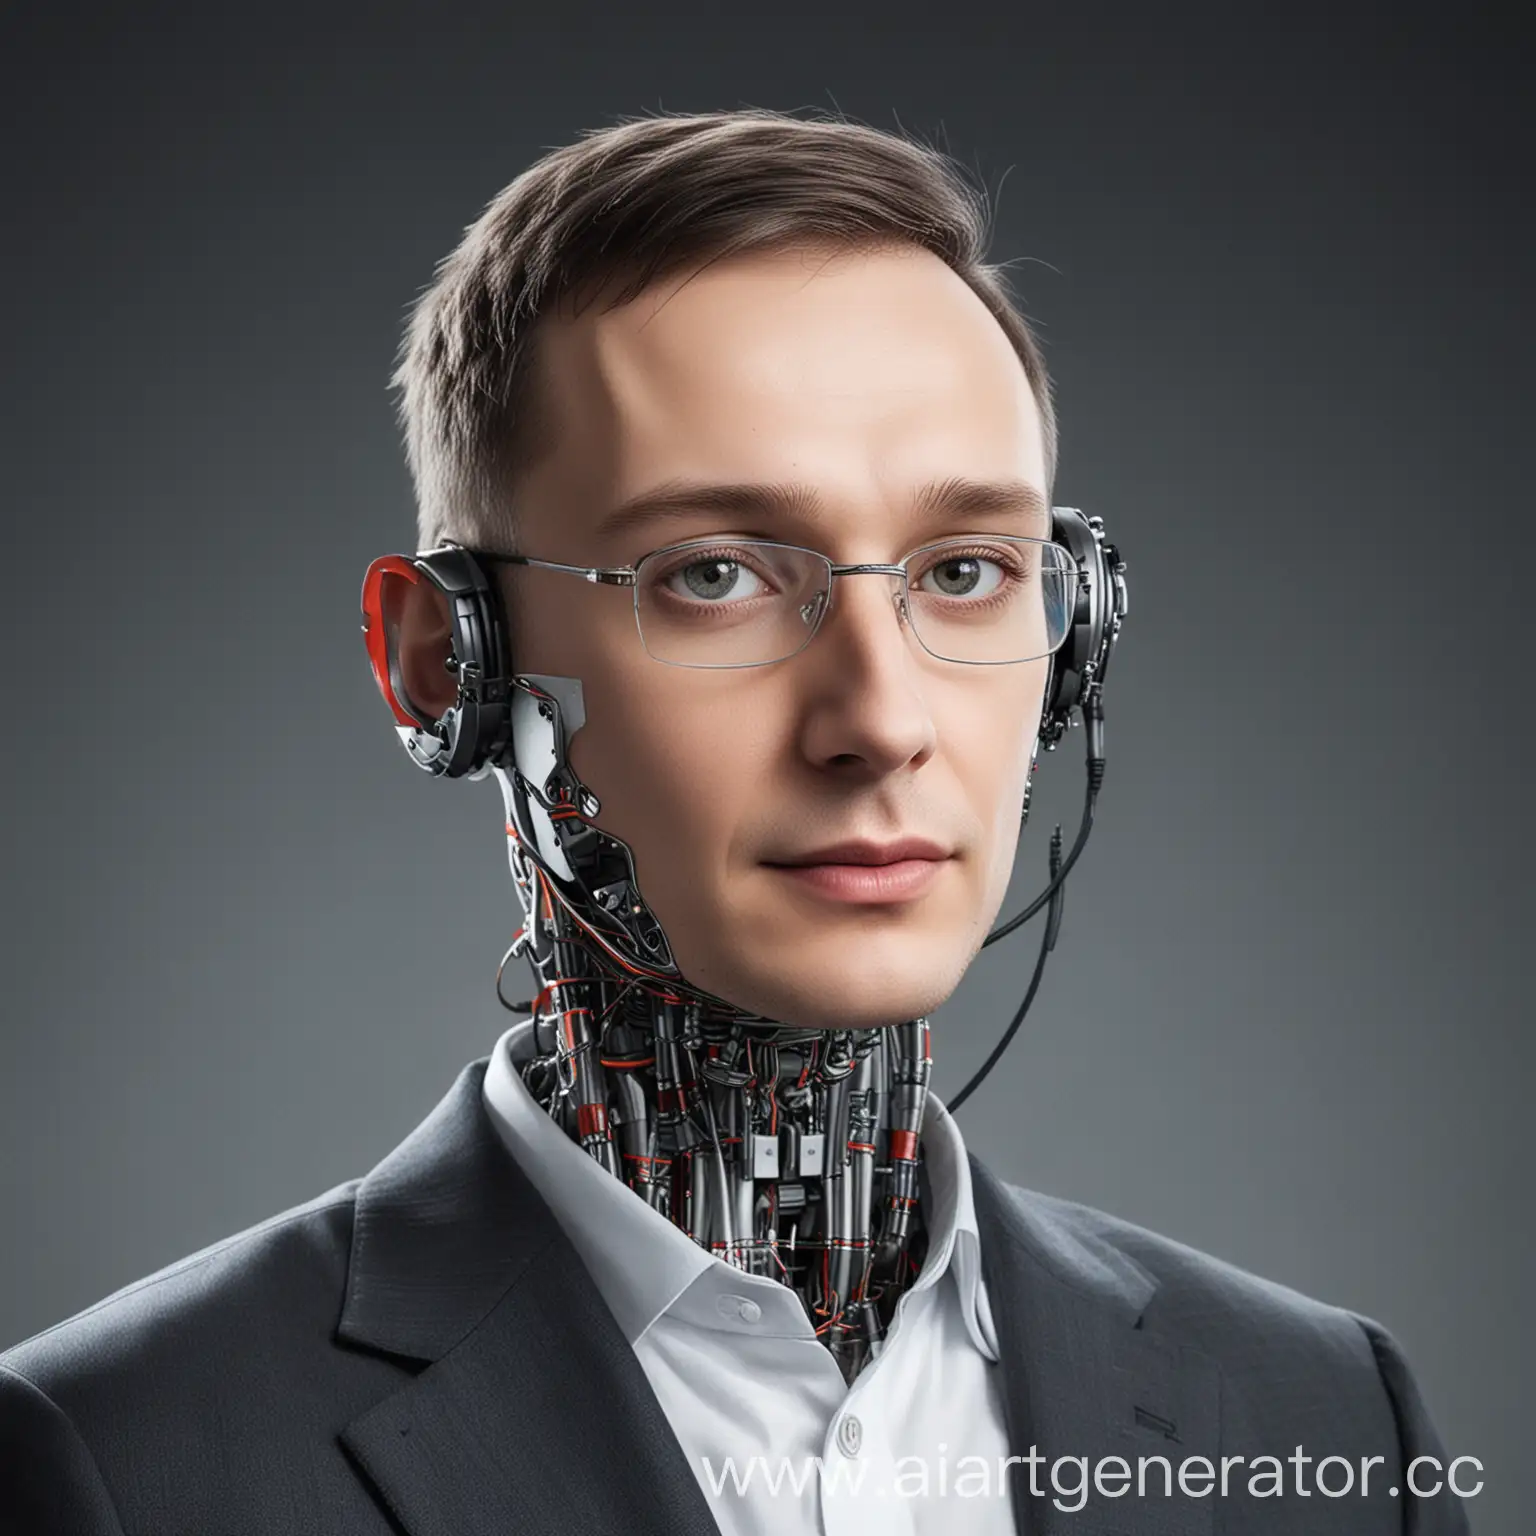 говорим про решения, тренды, перспективы развития искусственного интеллекта в России и мире. Обсудим рынок труда, инструменты управления и этику использования AI в бизнесе.